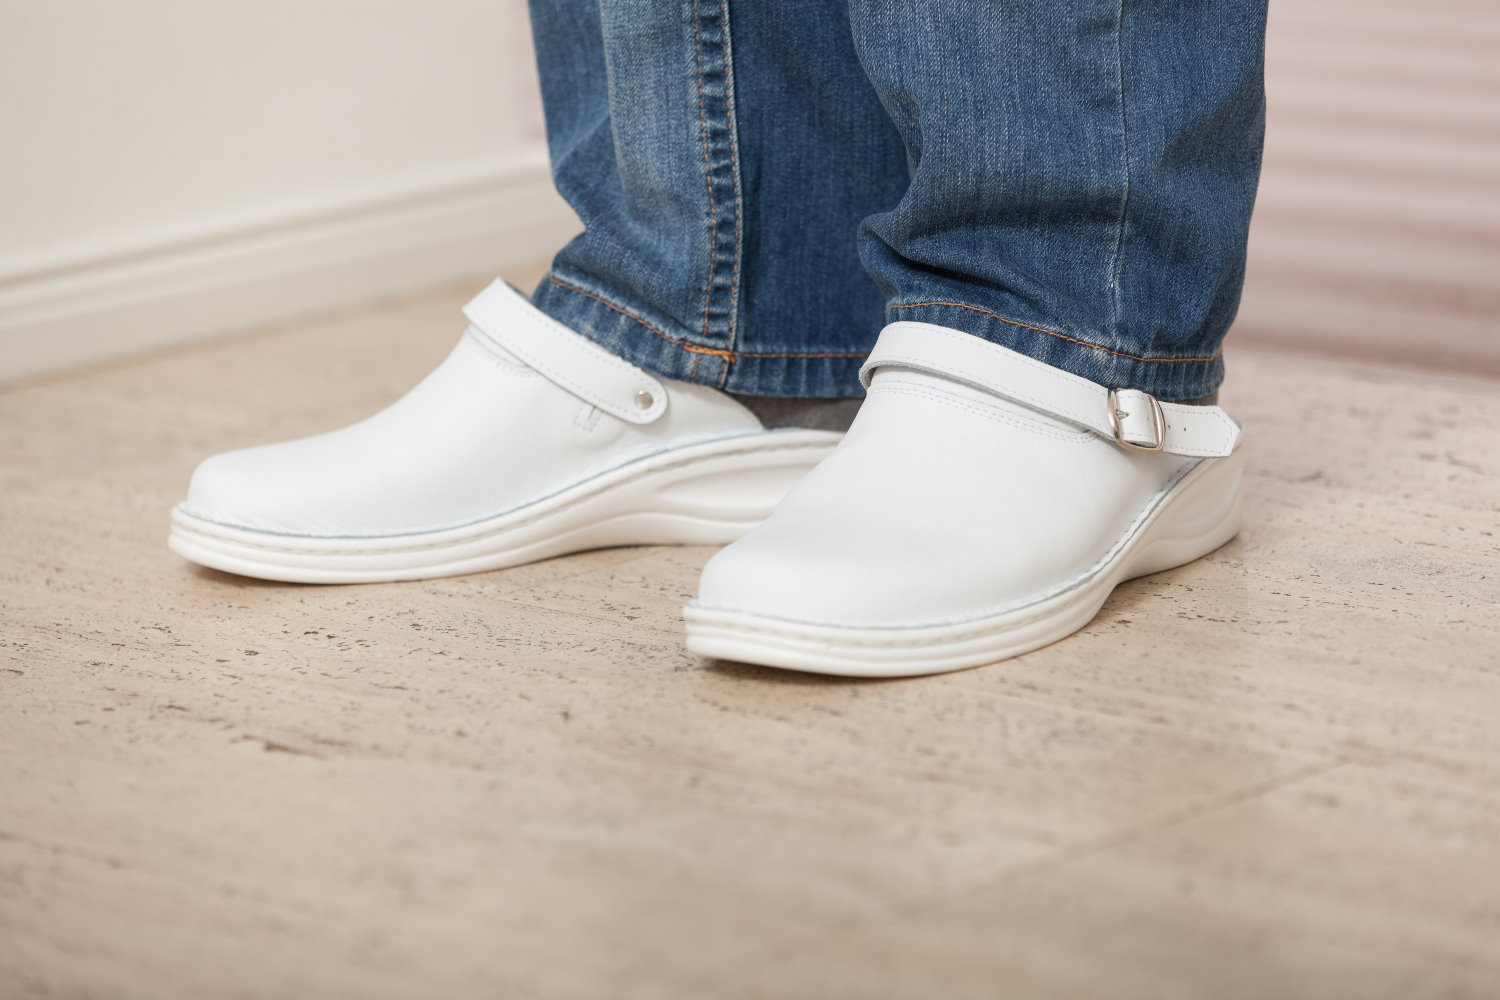 Ekonika Clogs in Weiß Damen Schuhe Absätze Clogs 